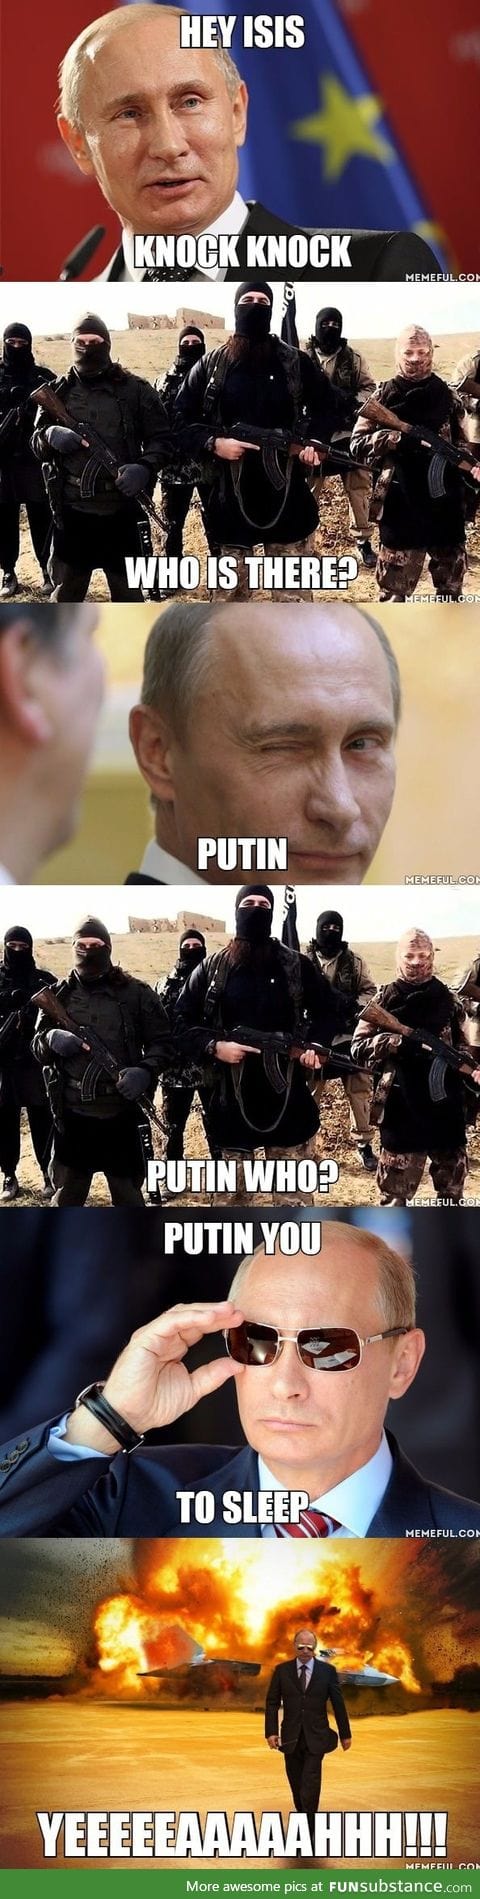 Putin's badassery